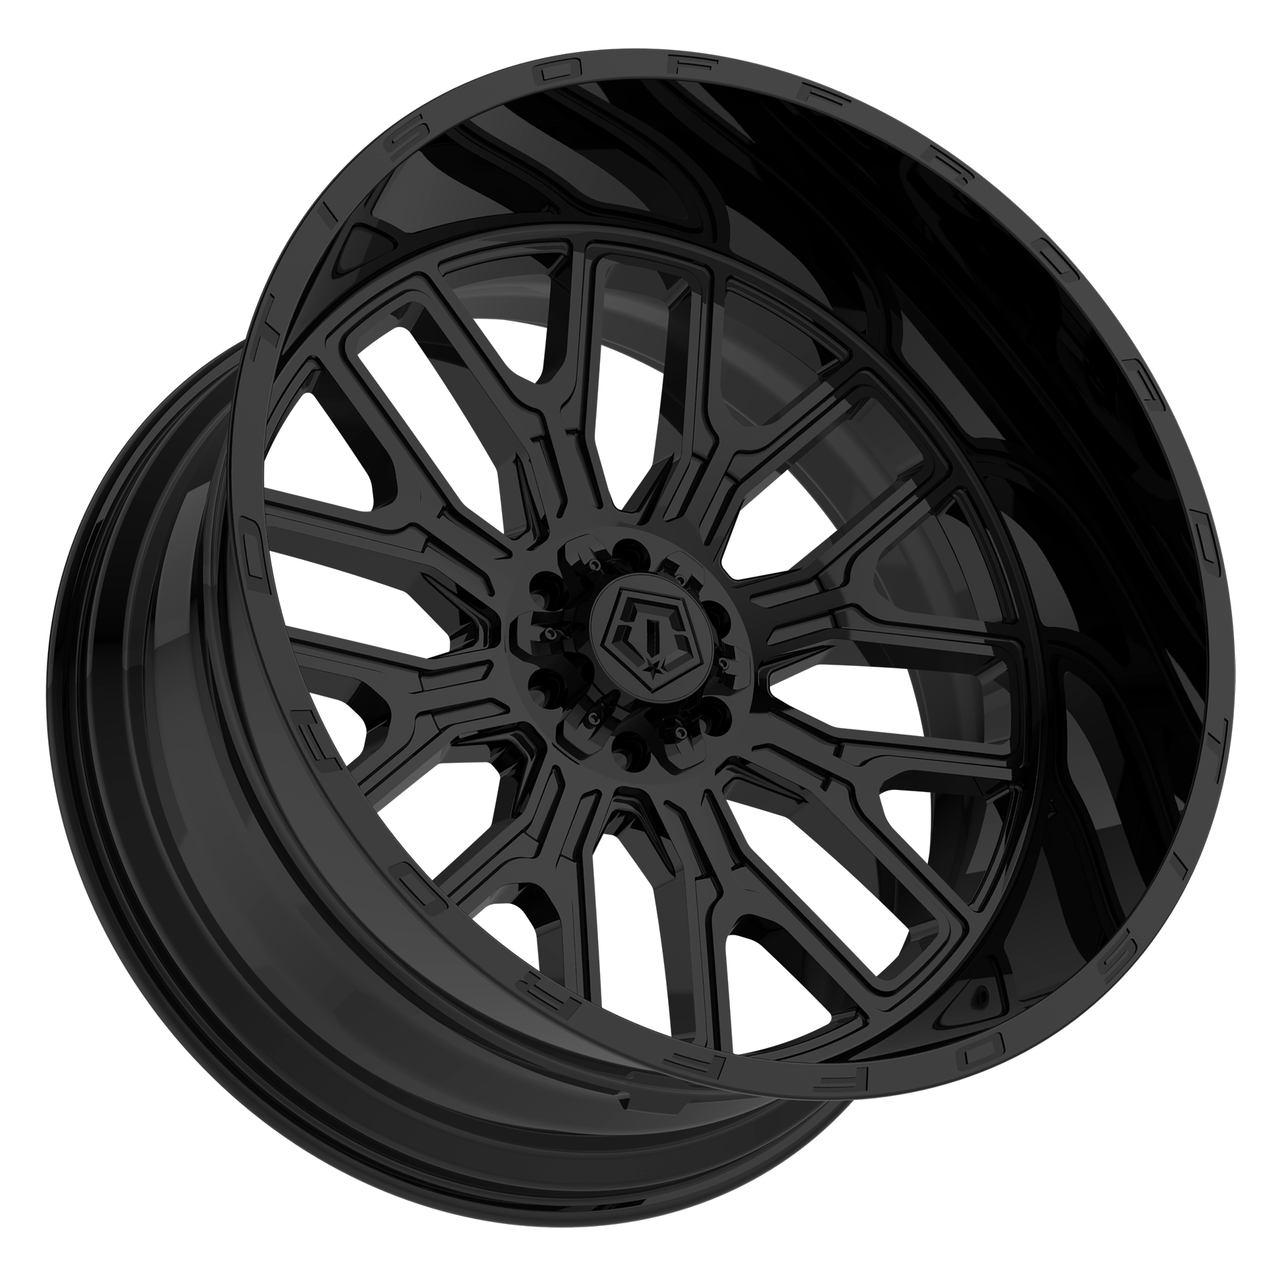 Set 4 20" TIS 560B Gloss Black 20x10 Wheels 5x5.5 5x150 -19mm For Toyota Ram Rim